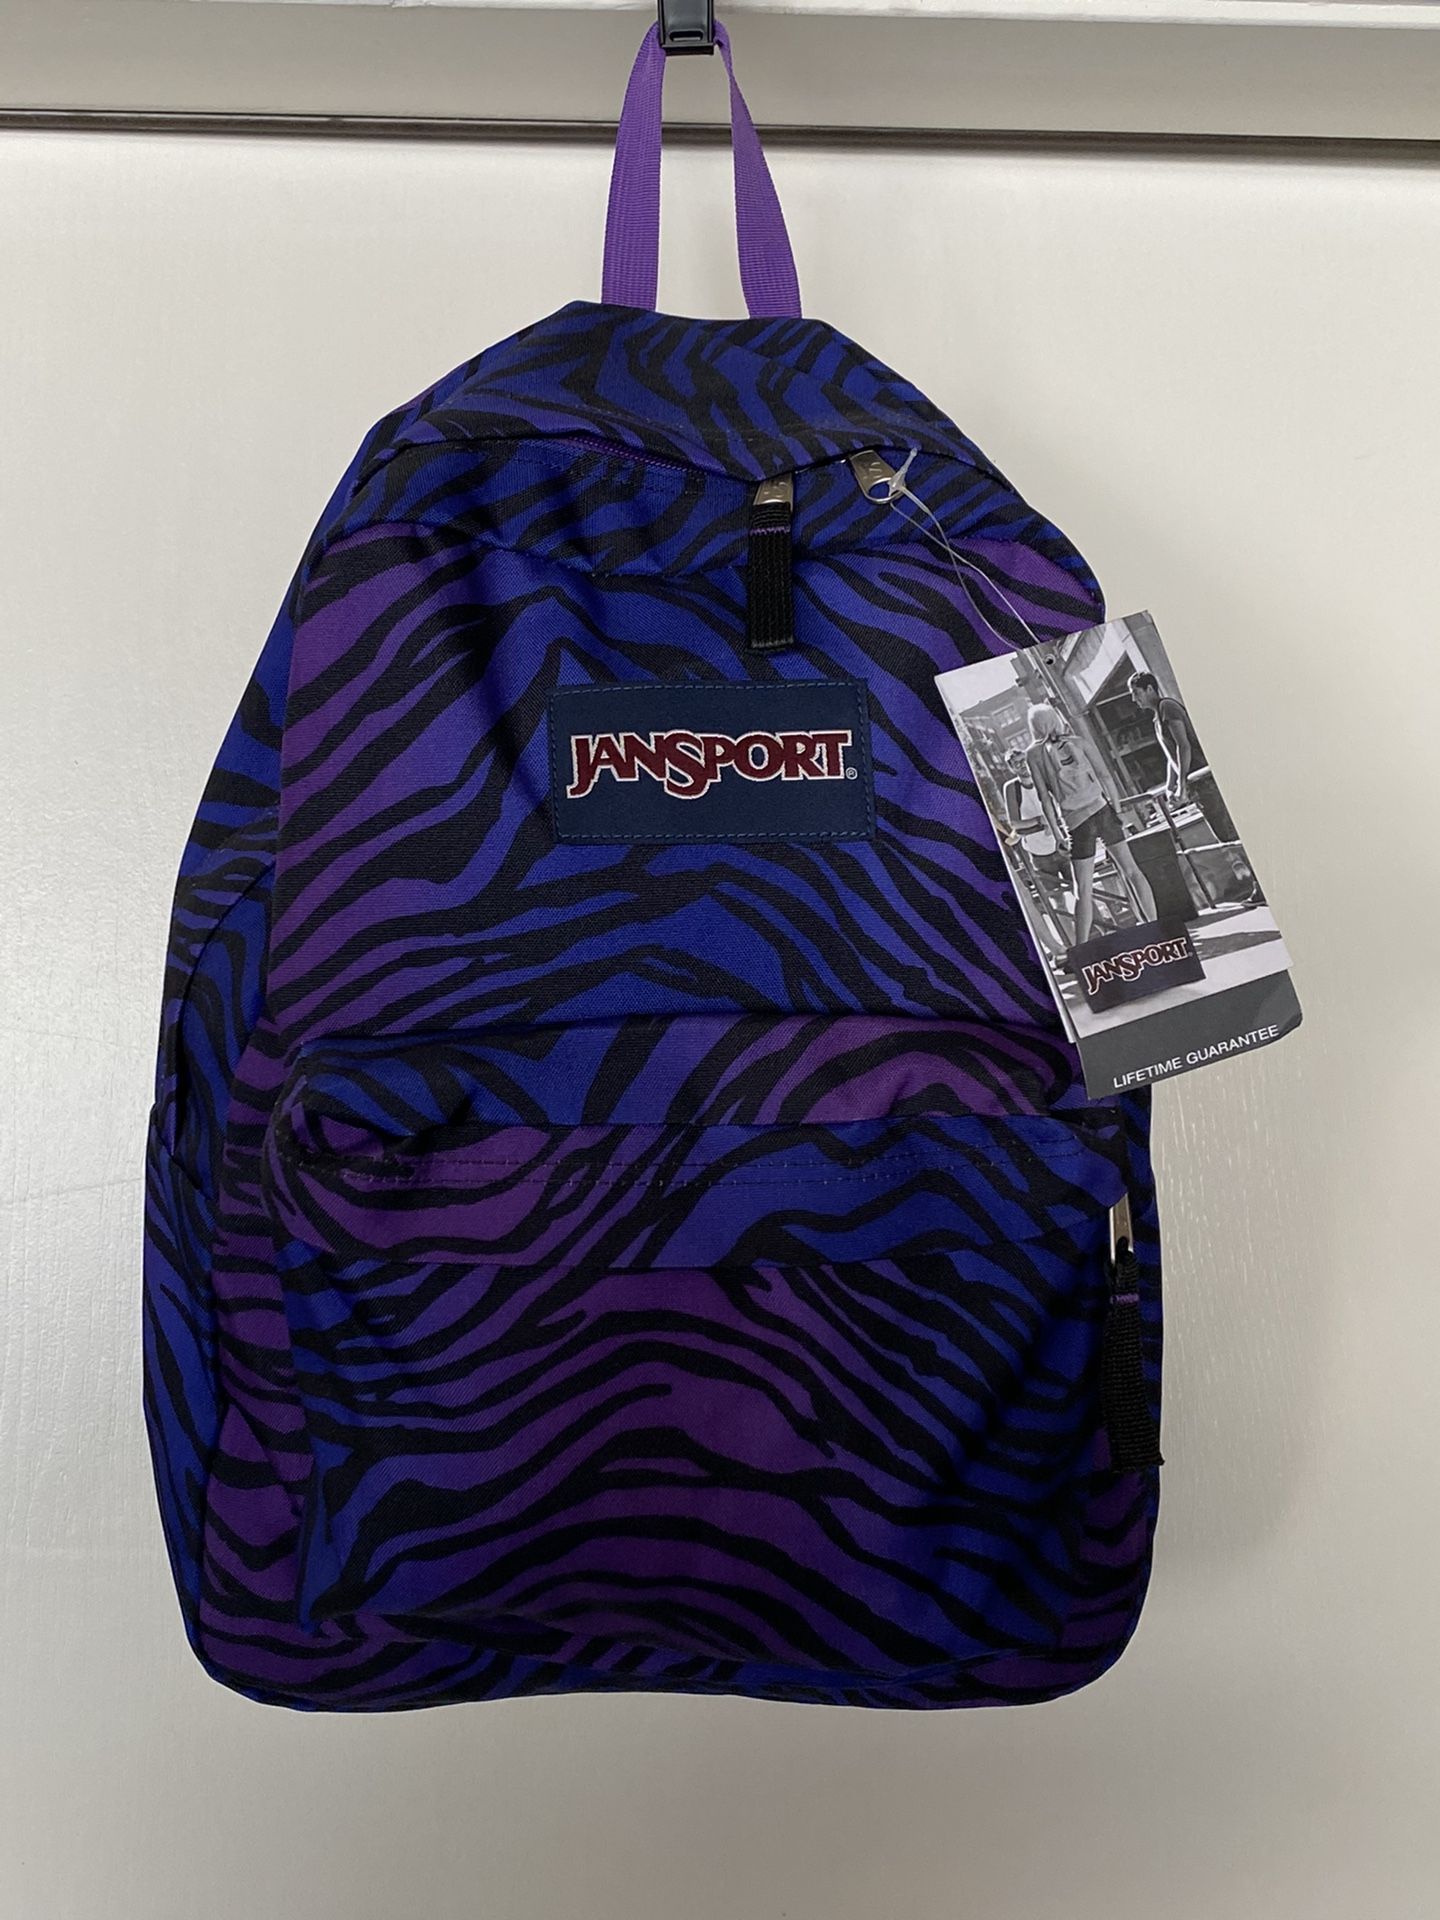 Jansport 25L backpack